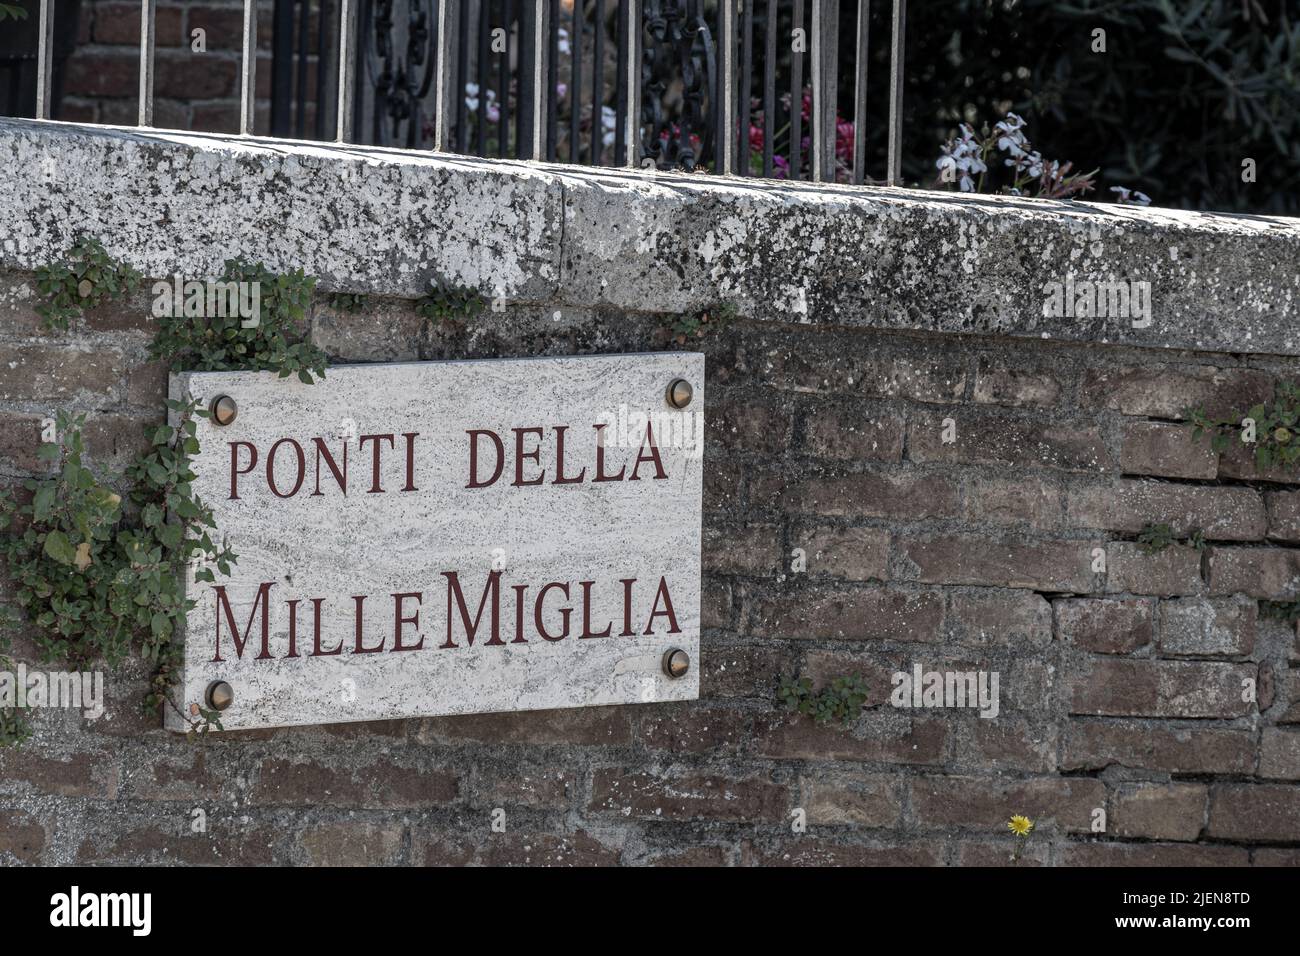 Panneau routier pour le pont point Della mille Miglia à San Quirico d'Orcia, Toscane - itinéraire de la course annuelle de la route mille Miglia Banque D'Images